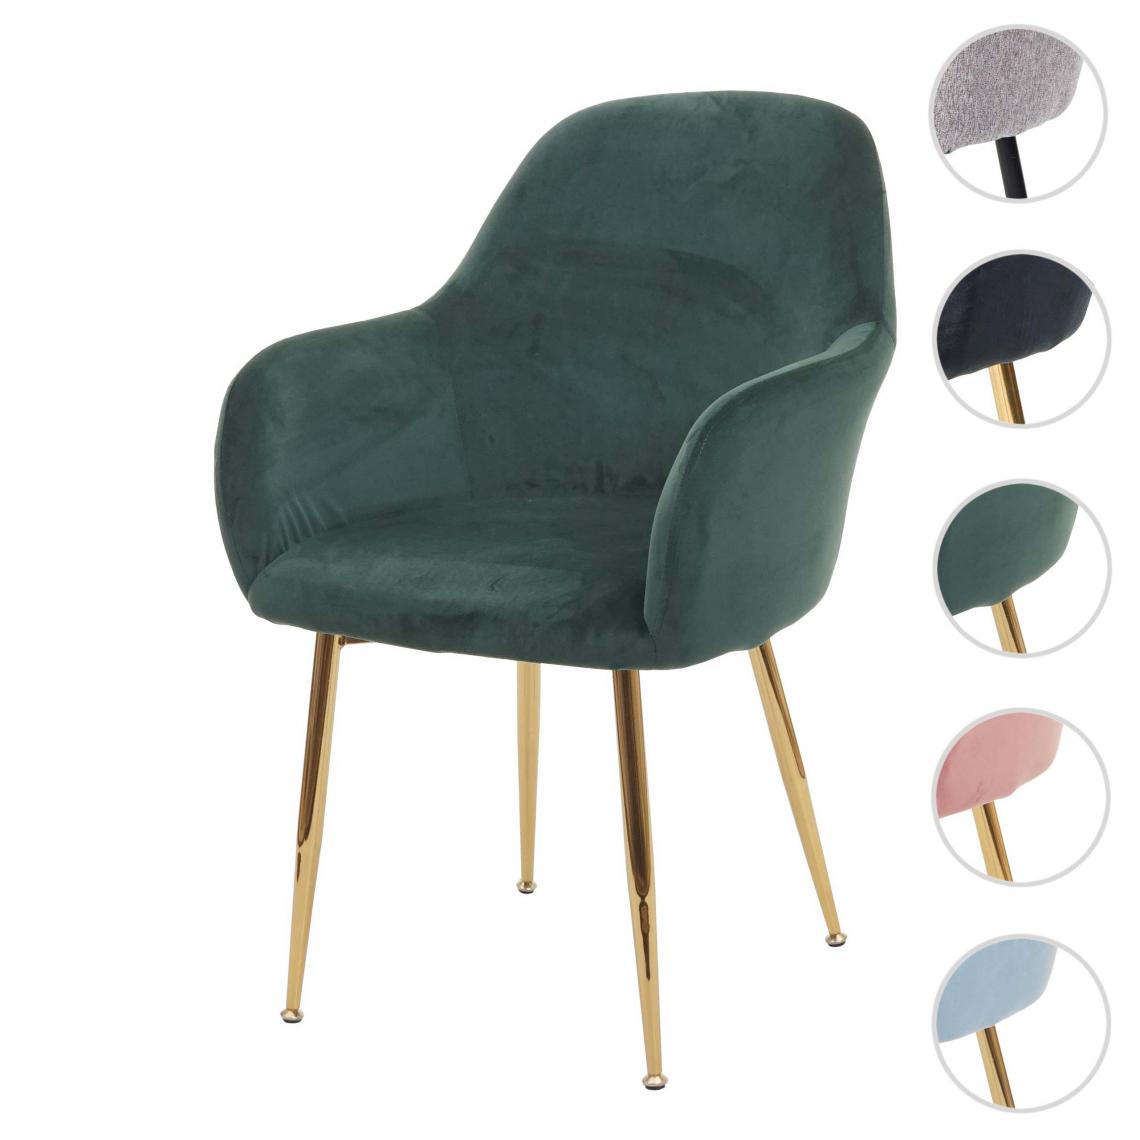 Mendler - Chaise de salle à manger HWC-F18, chaise de cuisine, design rétro ~ vert velours, pieds dorés - Chaises